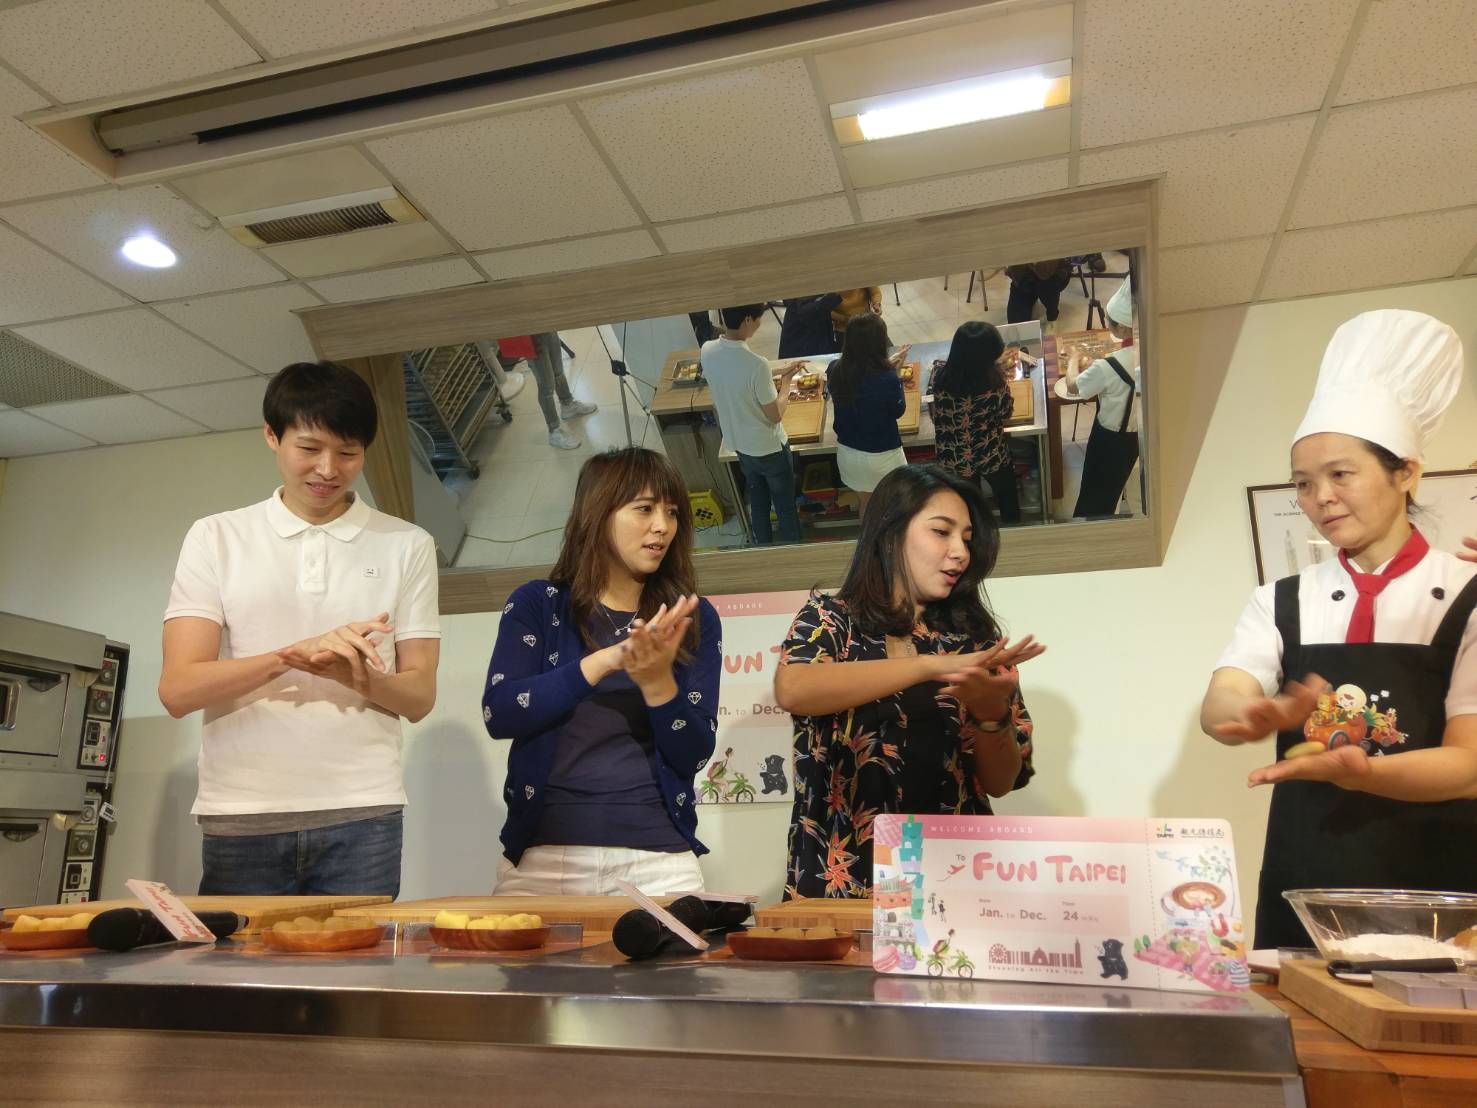 為了解臺北糕餅文化與百年糕餅老店故事郭元益特別安排奇拉娜親自製作熊讚鳳梨酥。